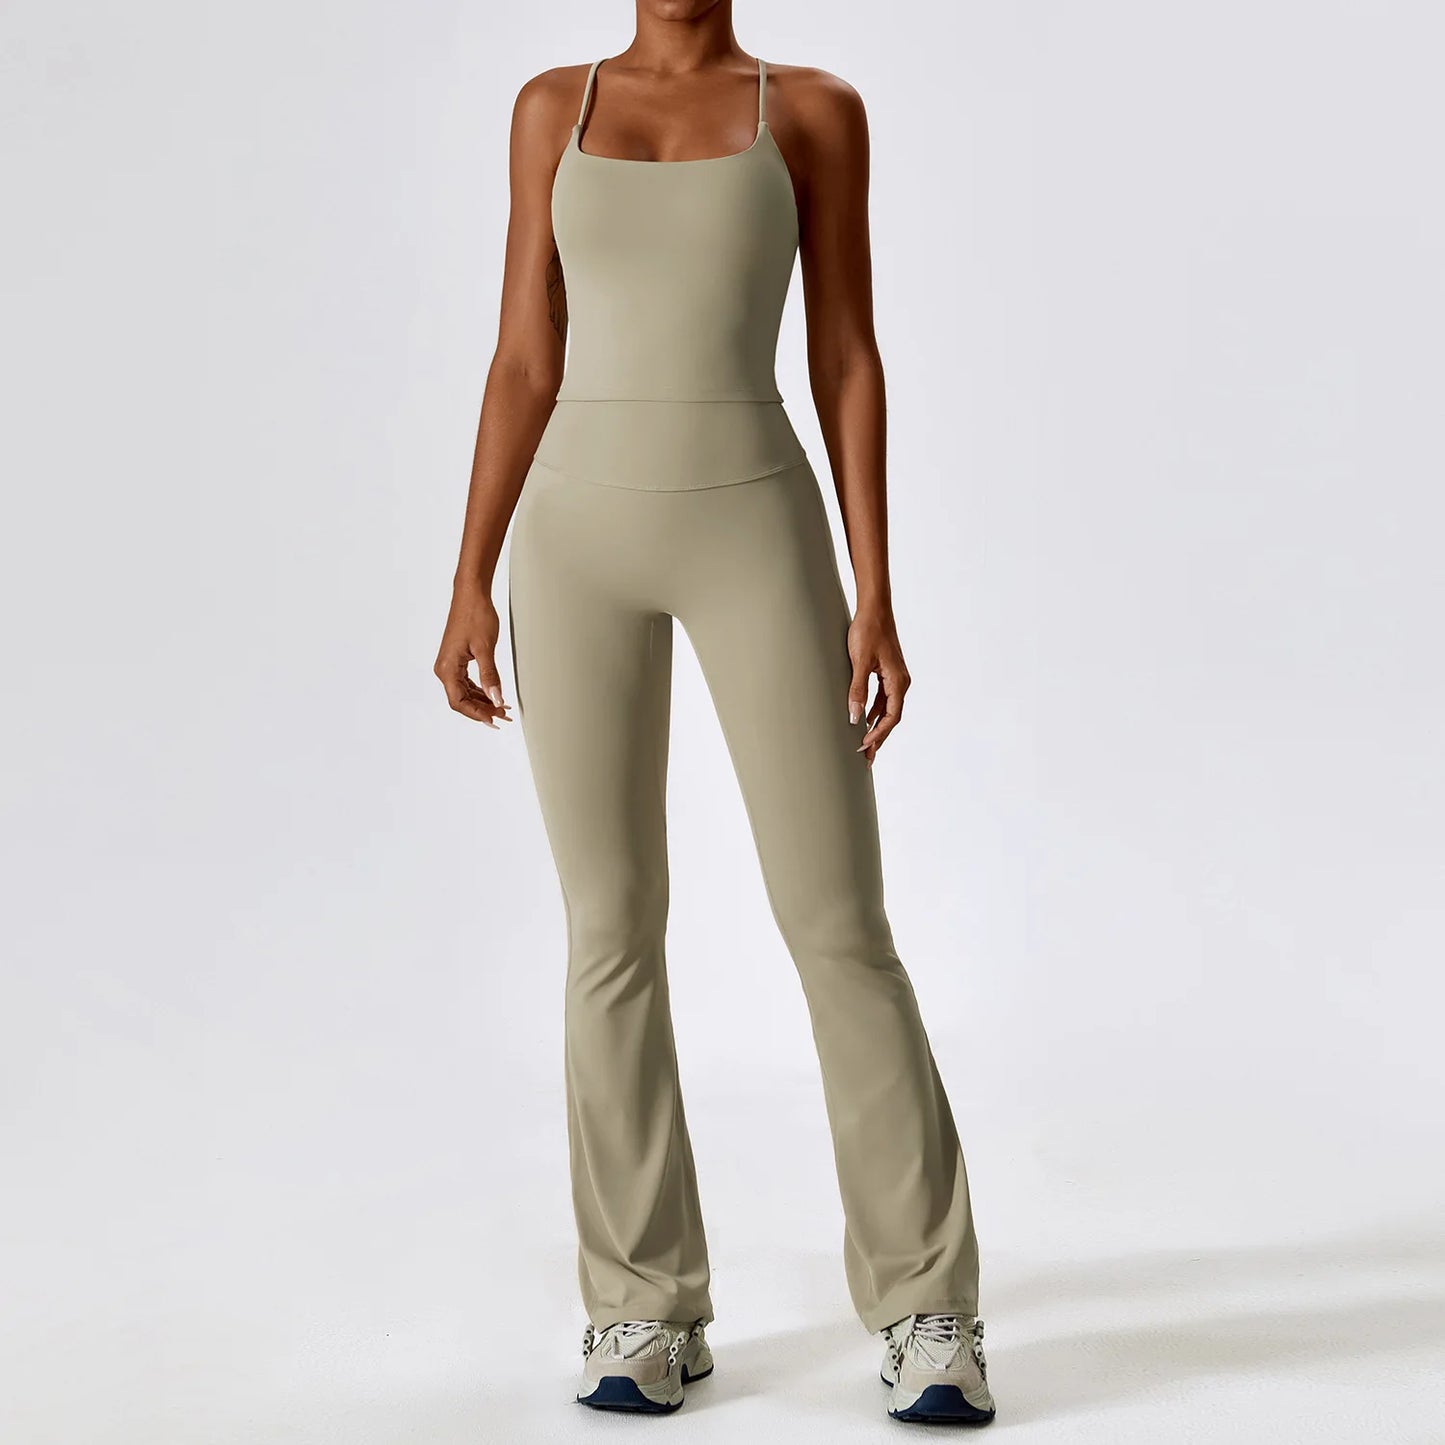 Yoga Set 2PCS Seamless Women Sportswear Workout Clothes